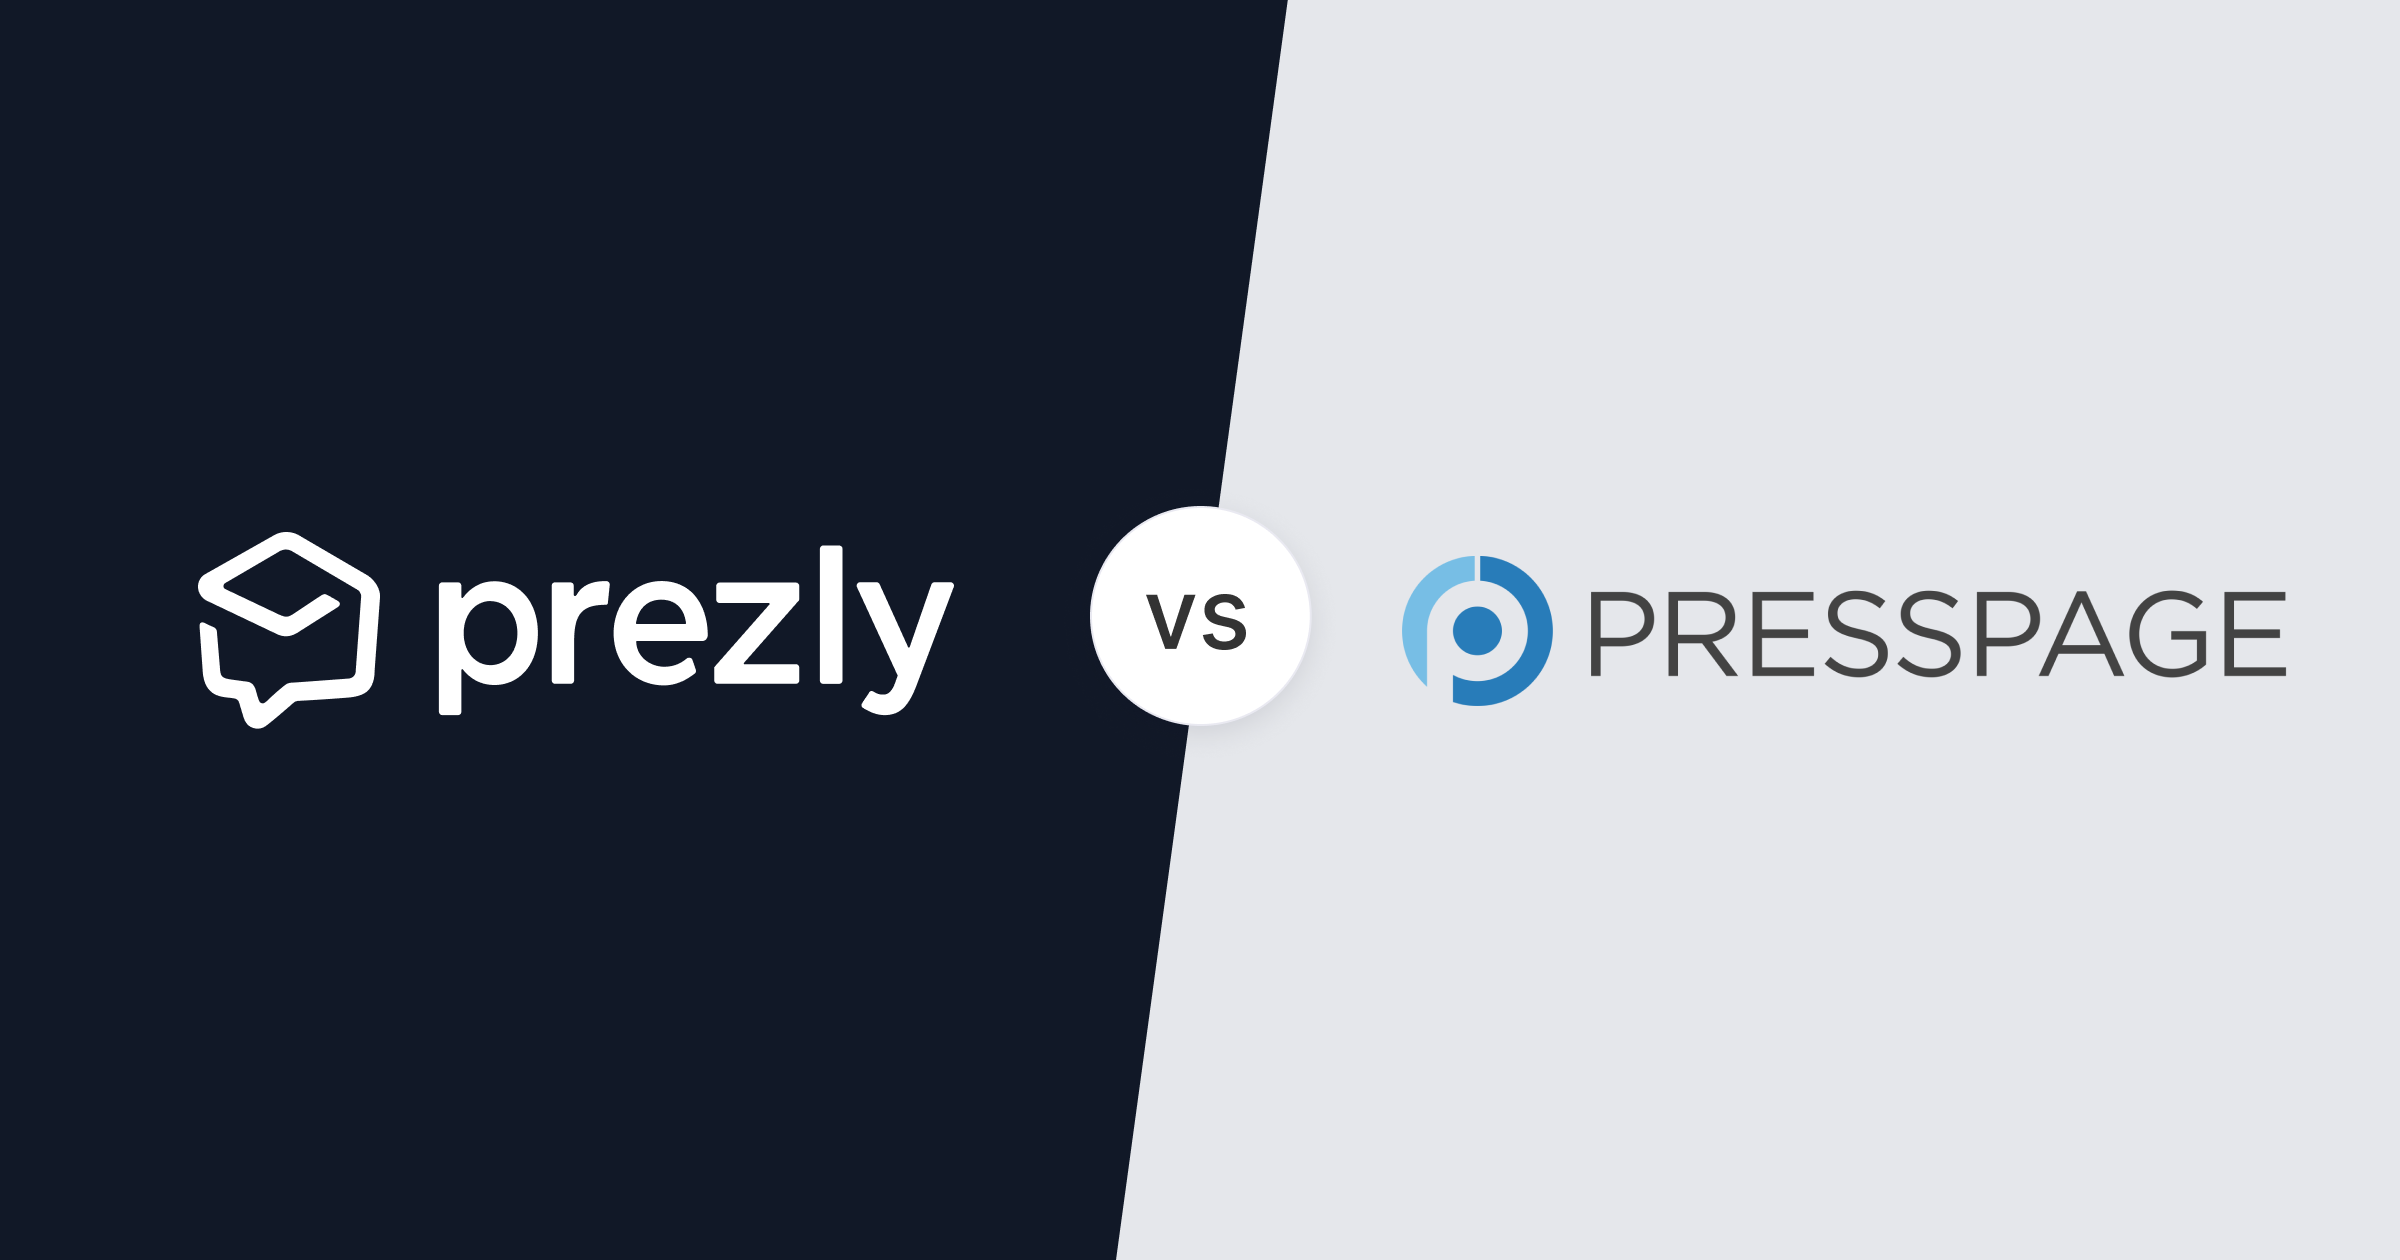 Prezly vs. Presspage